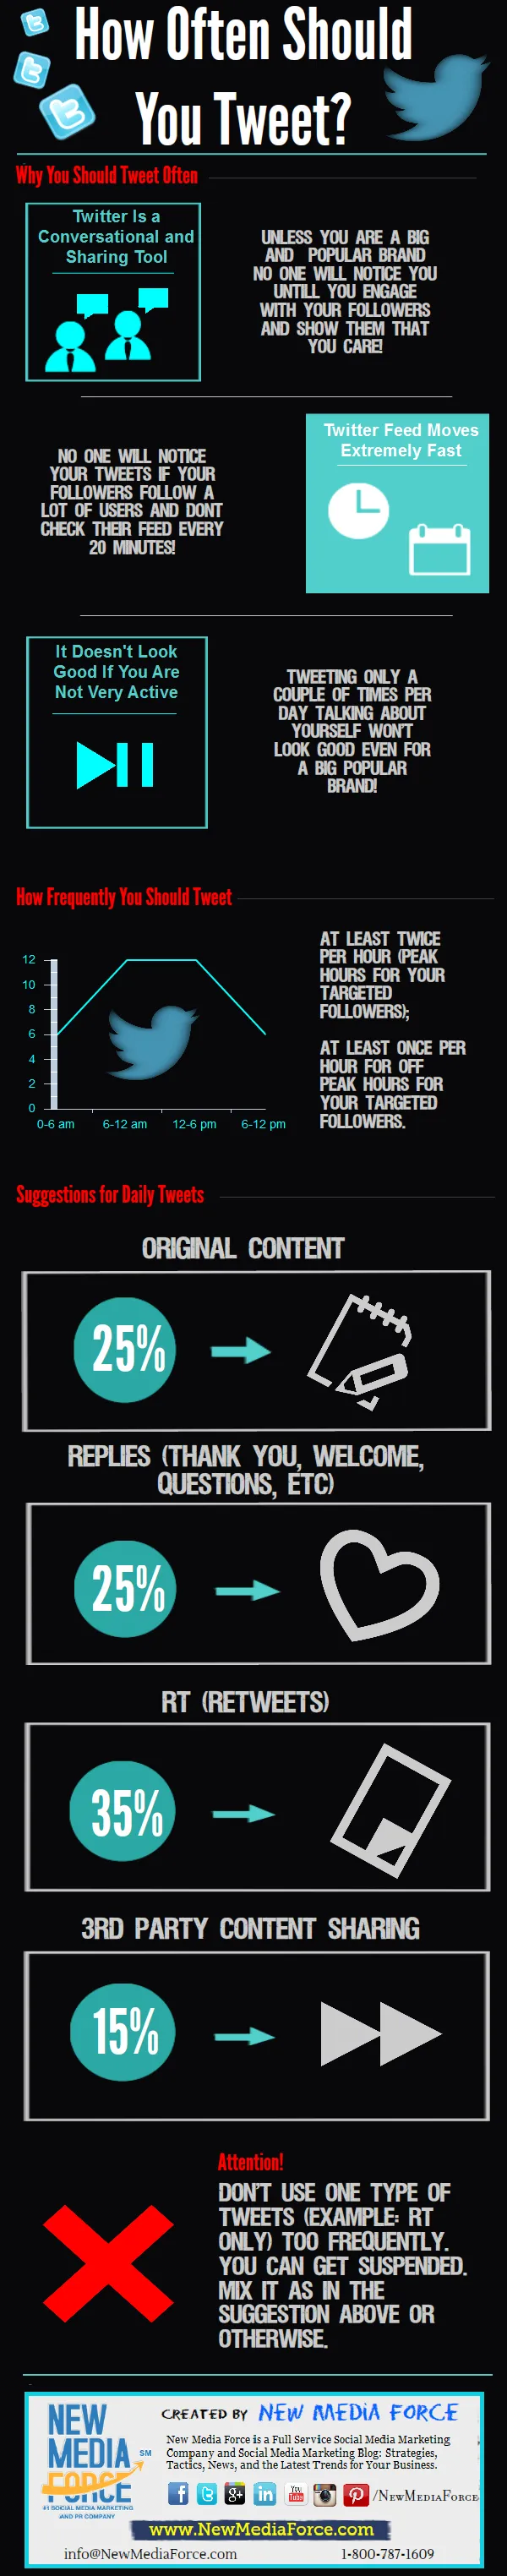 How-Often-Should-You-Tweet-Infographic-1